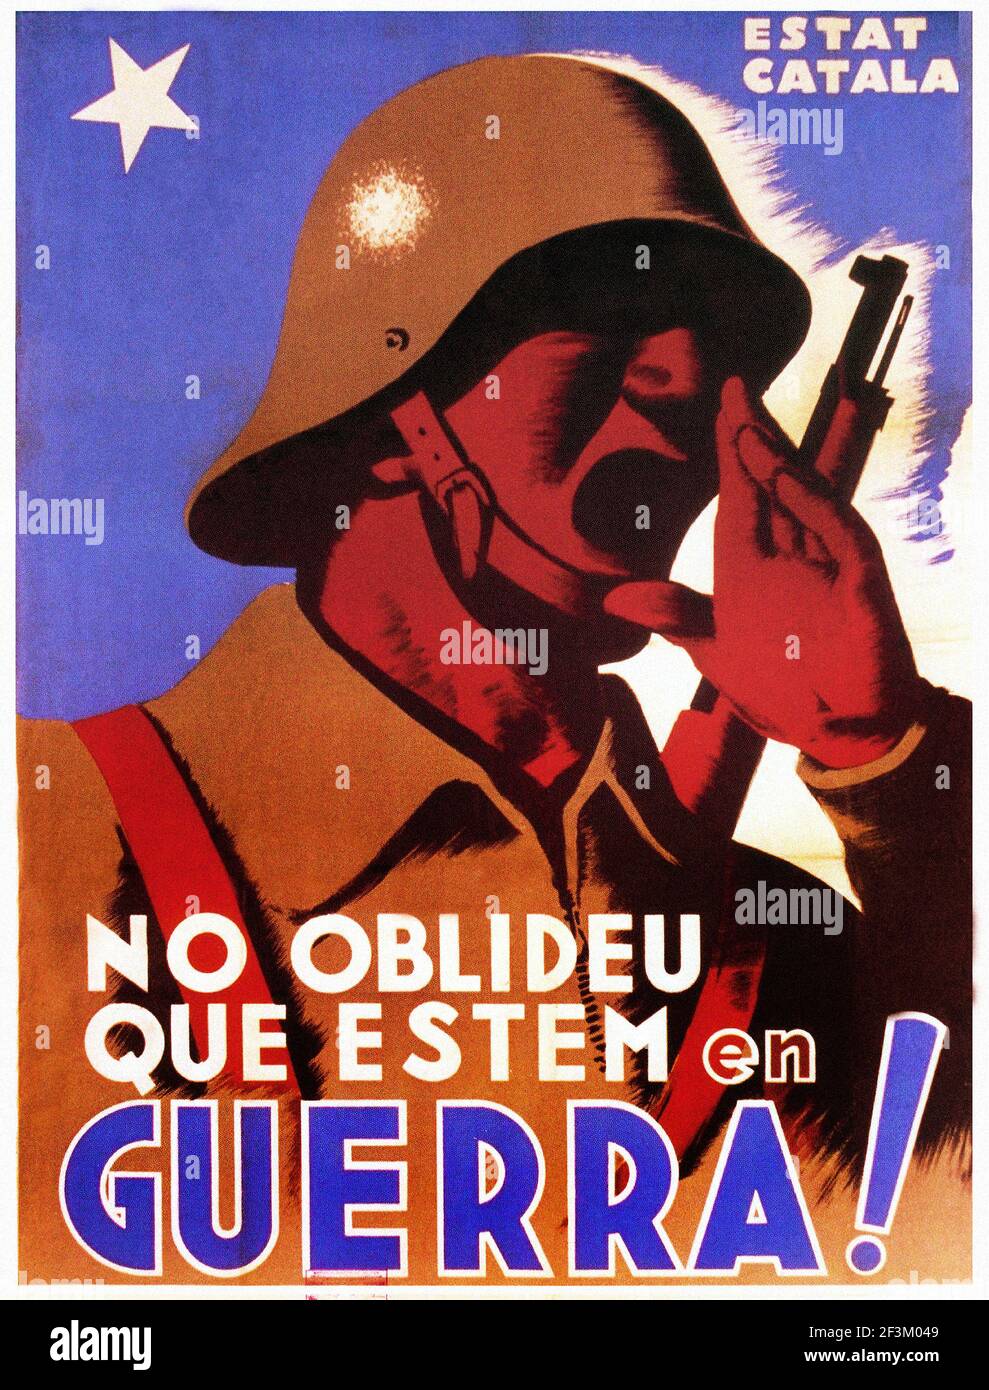 Affiche de propagande espagnole de la guerre de Sécession. 1936-1939. Les relations de l'Estat Catala avec les vérités offensives NAZIES du Reich III. Banque D'Images